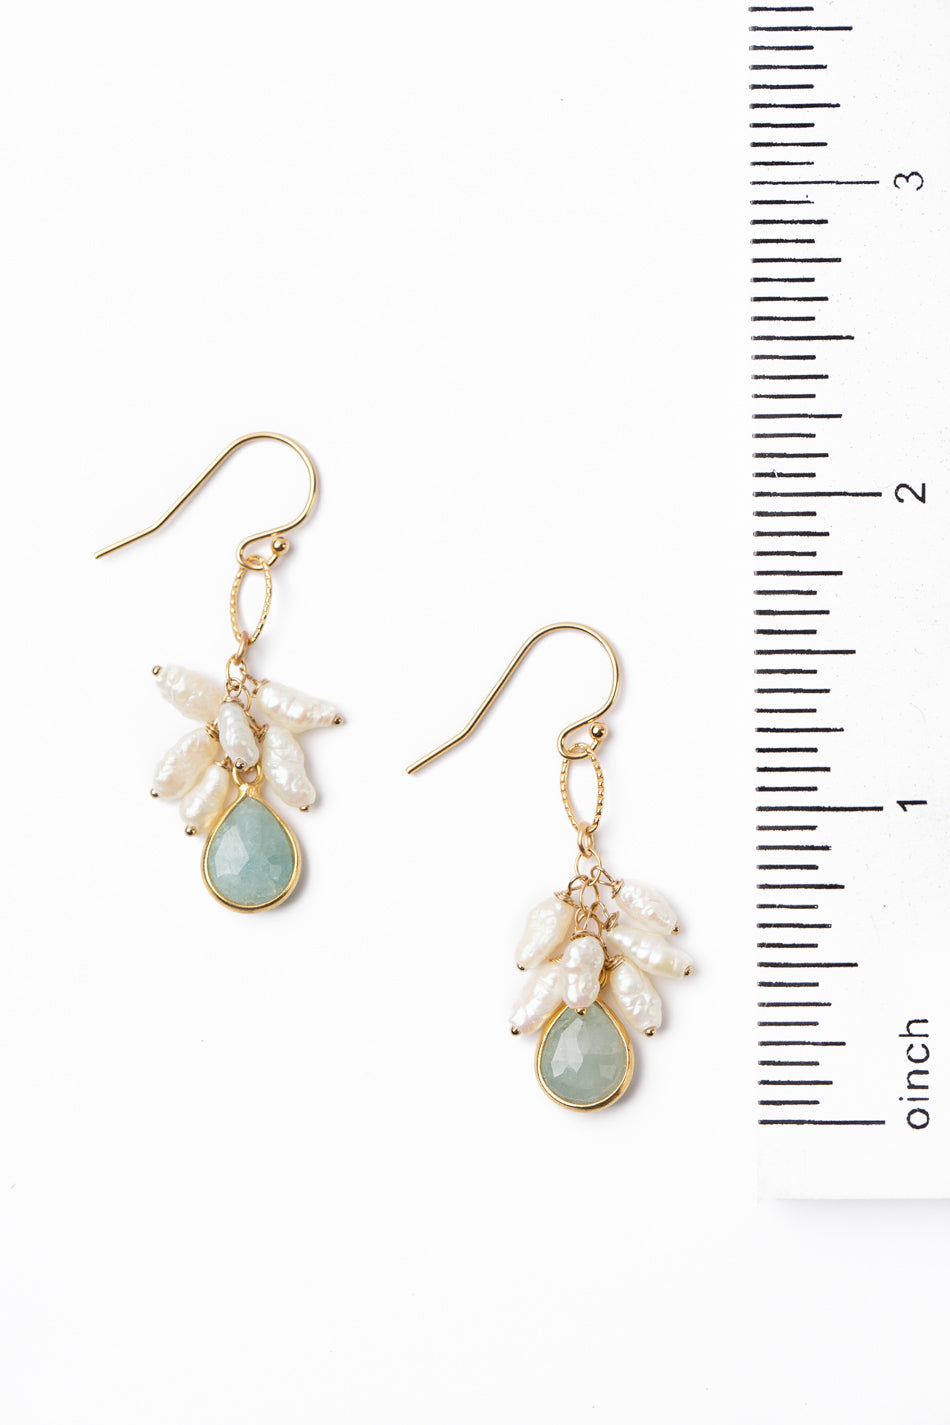 Dreams & Flowers Aquamarine, Pearl Simple Earrings